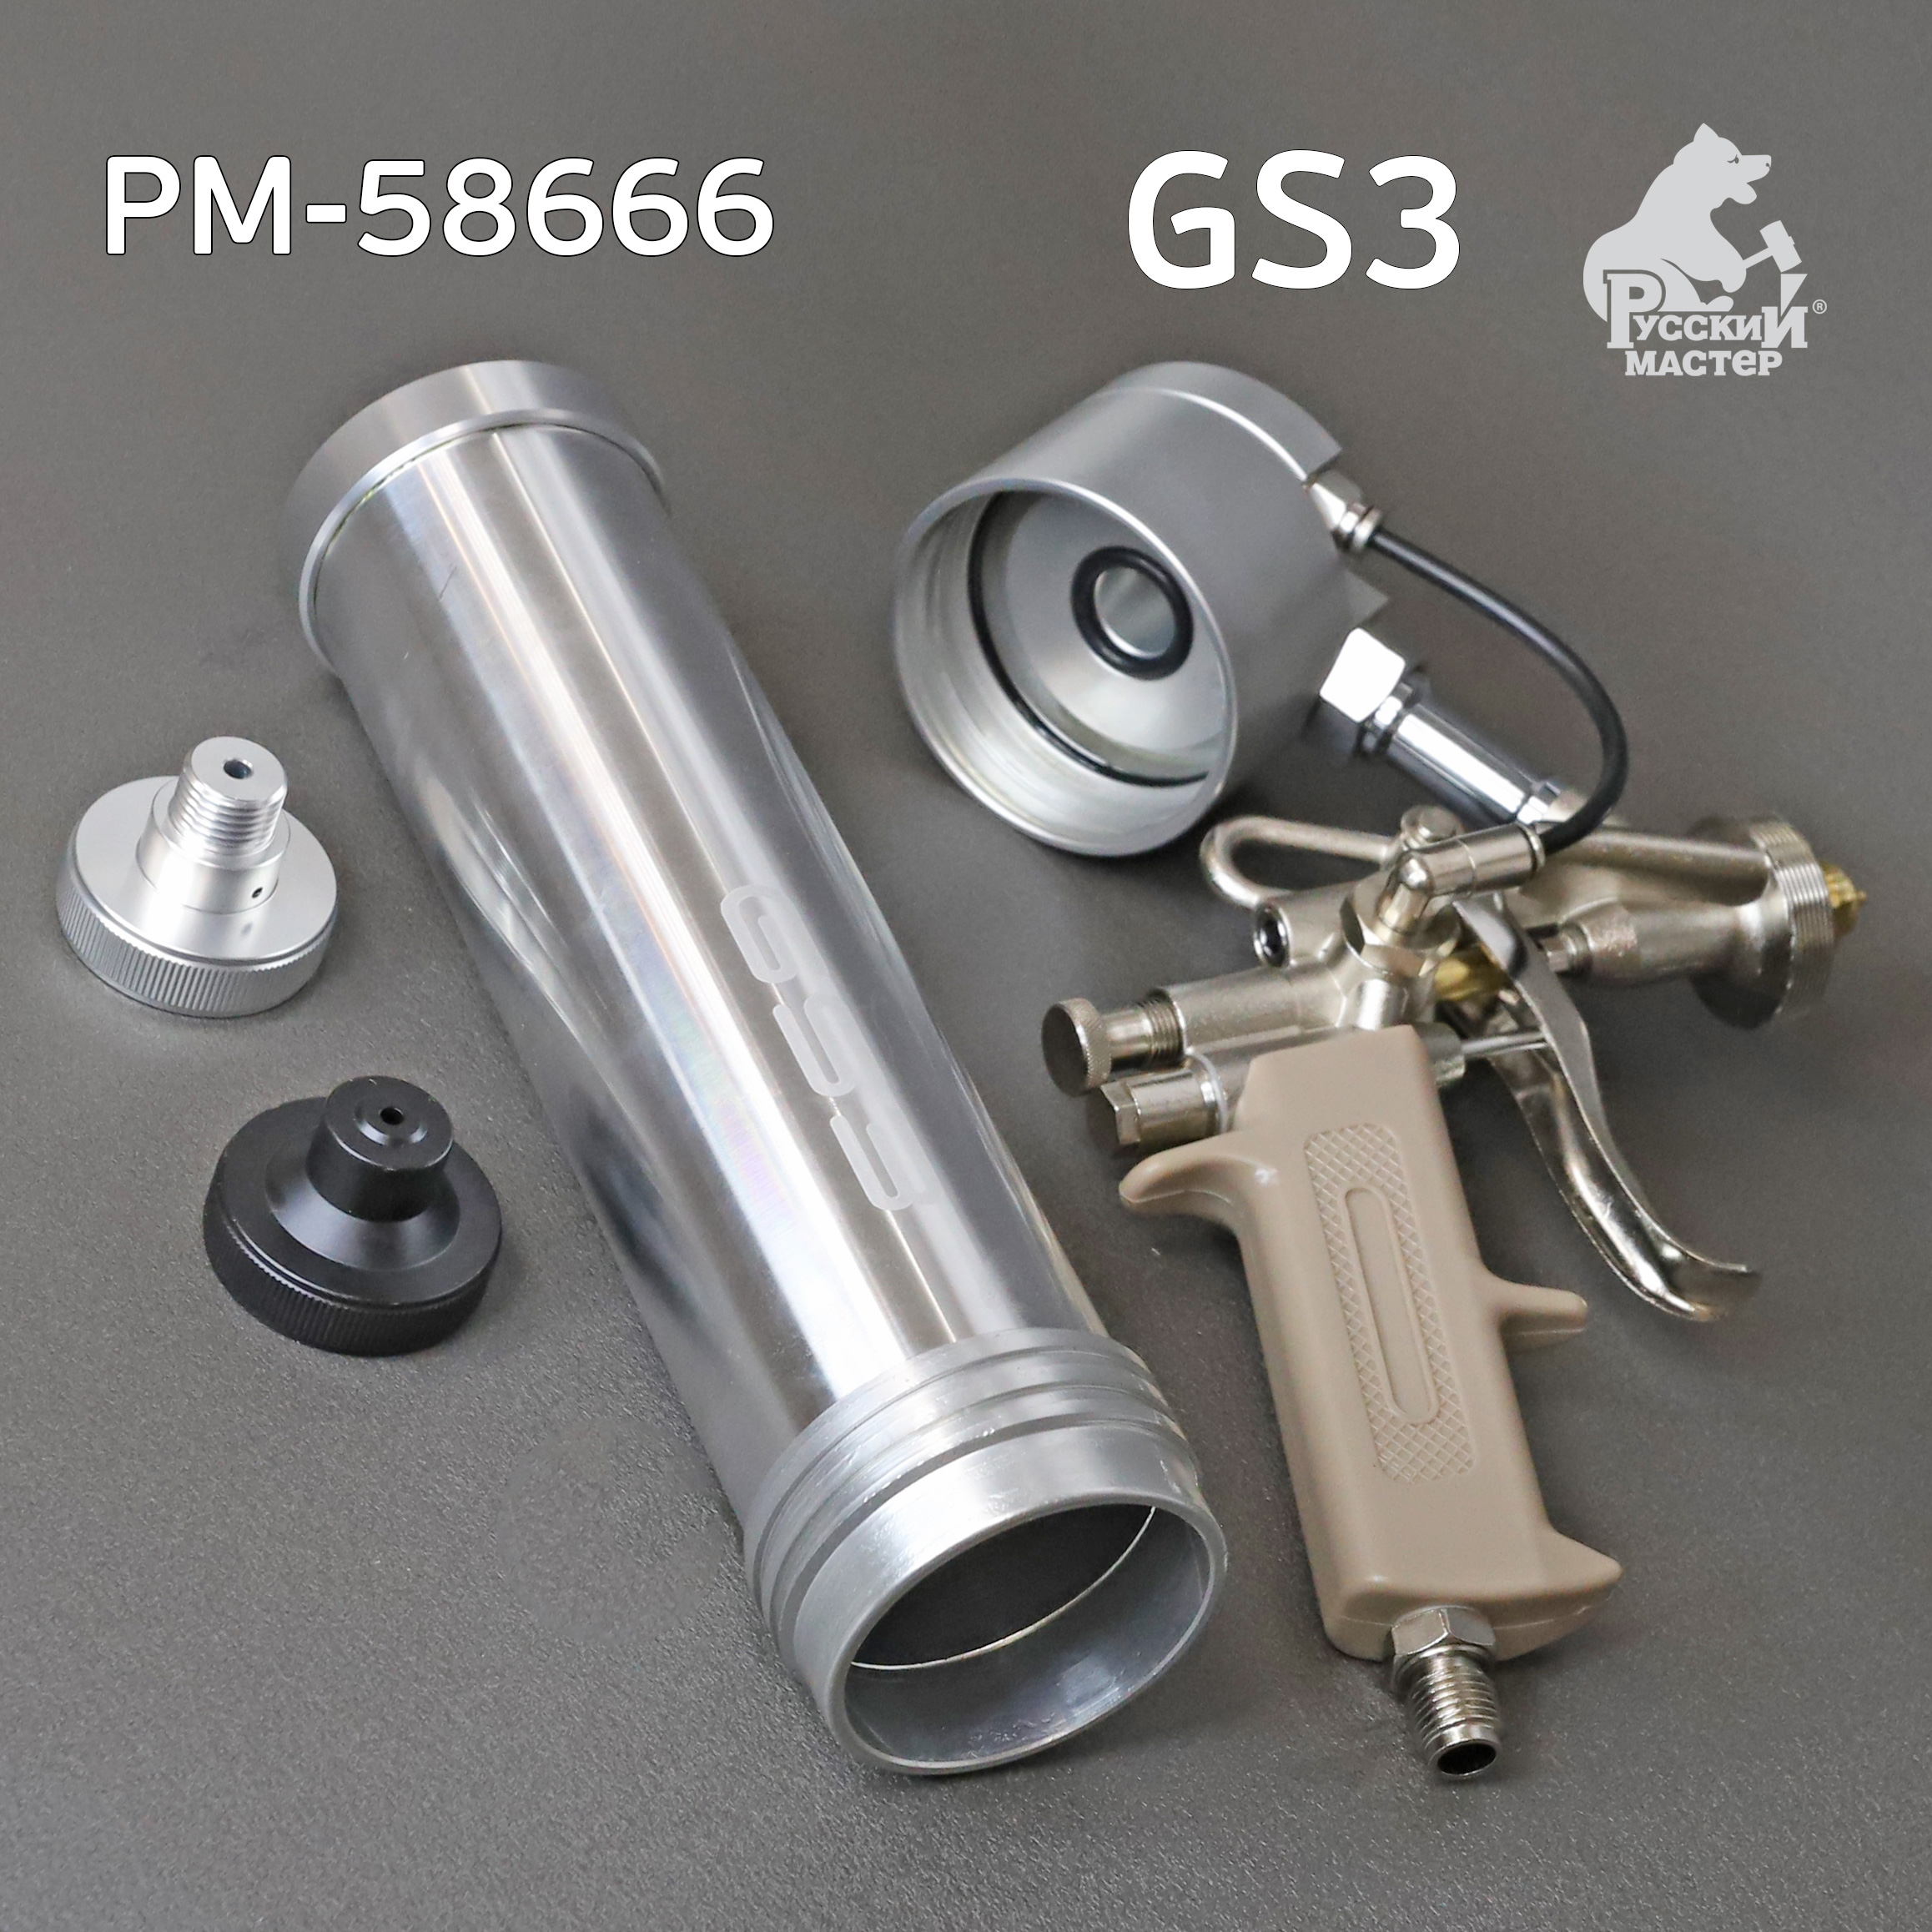  для MS герметика пневмо GS3 для распыляемых герметиков Русский .